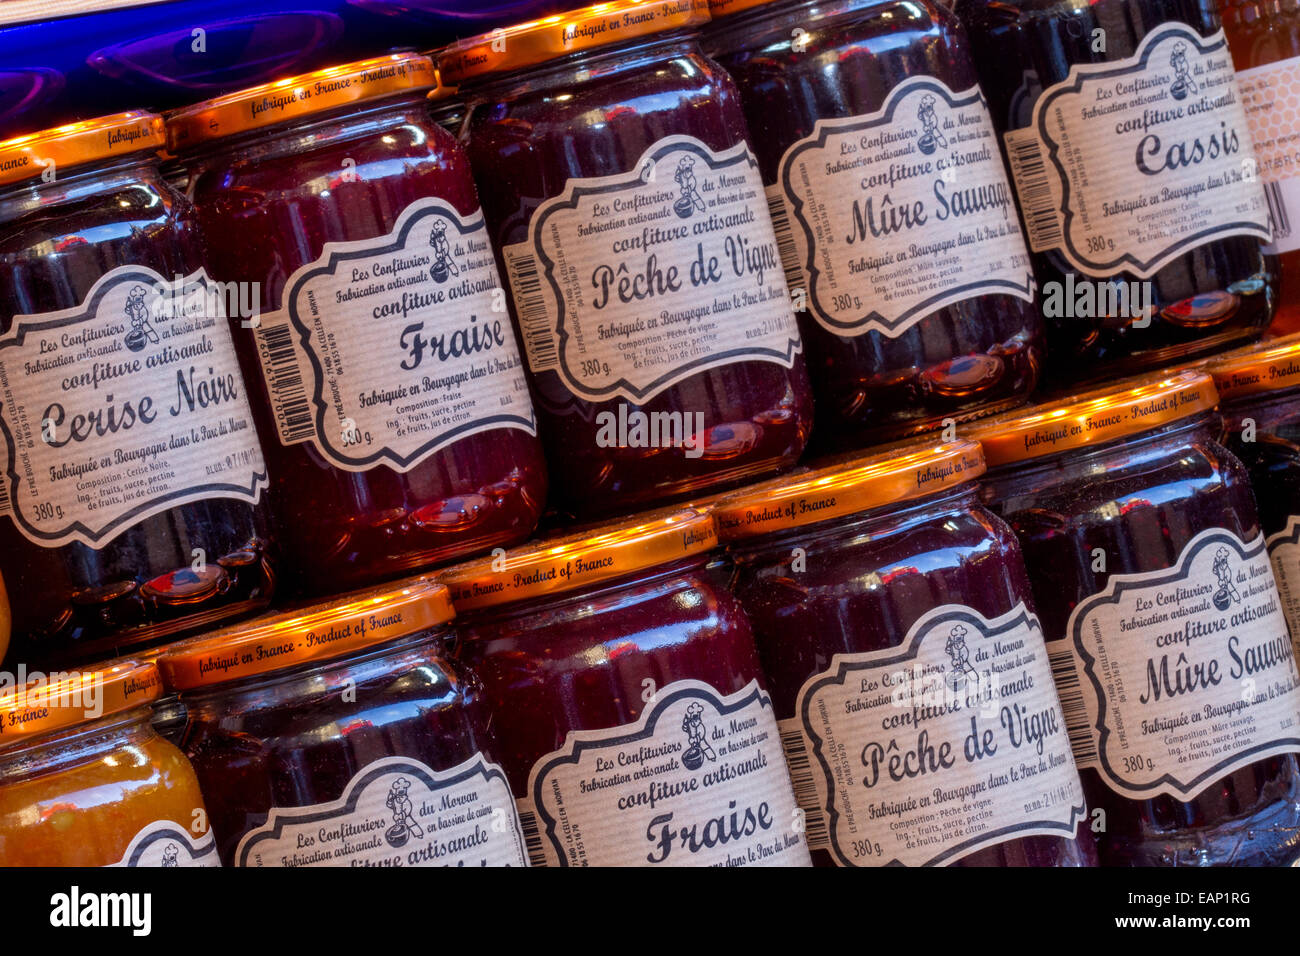 Cibi francesi importati, la Maison Francaise, varietà di marmellate francesi, confit, vasetti di conserve di frutta e confit marmellata sugli scaffali. Foto Stock